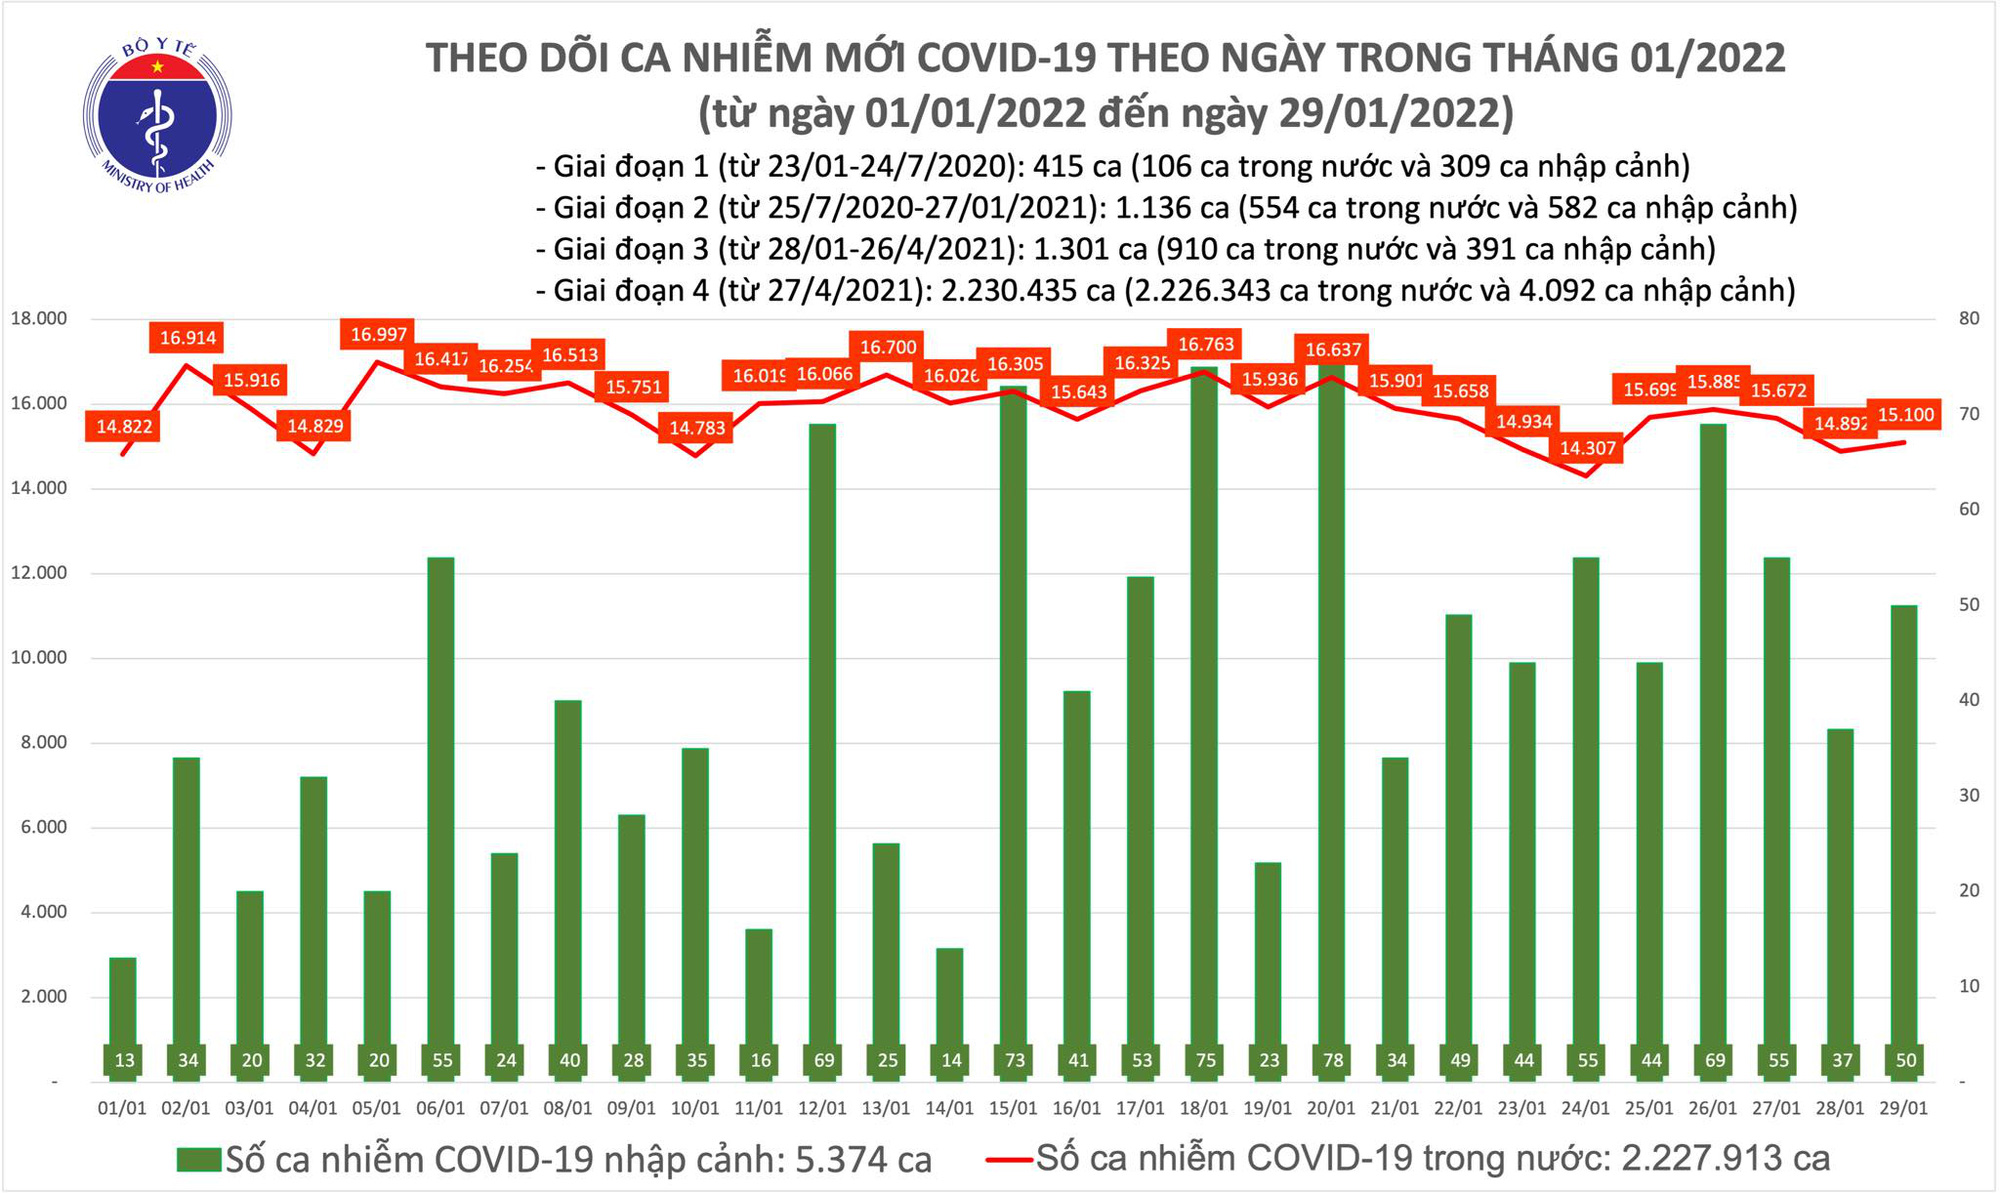 Ngày 29/1: Có 15.150 ca COVID-19, Hà Nội vẫn nhiều nhất; số F0 tử vong giảm mạnh - Ảnh 1.